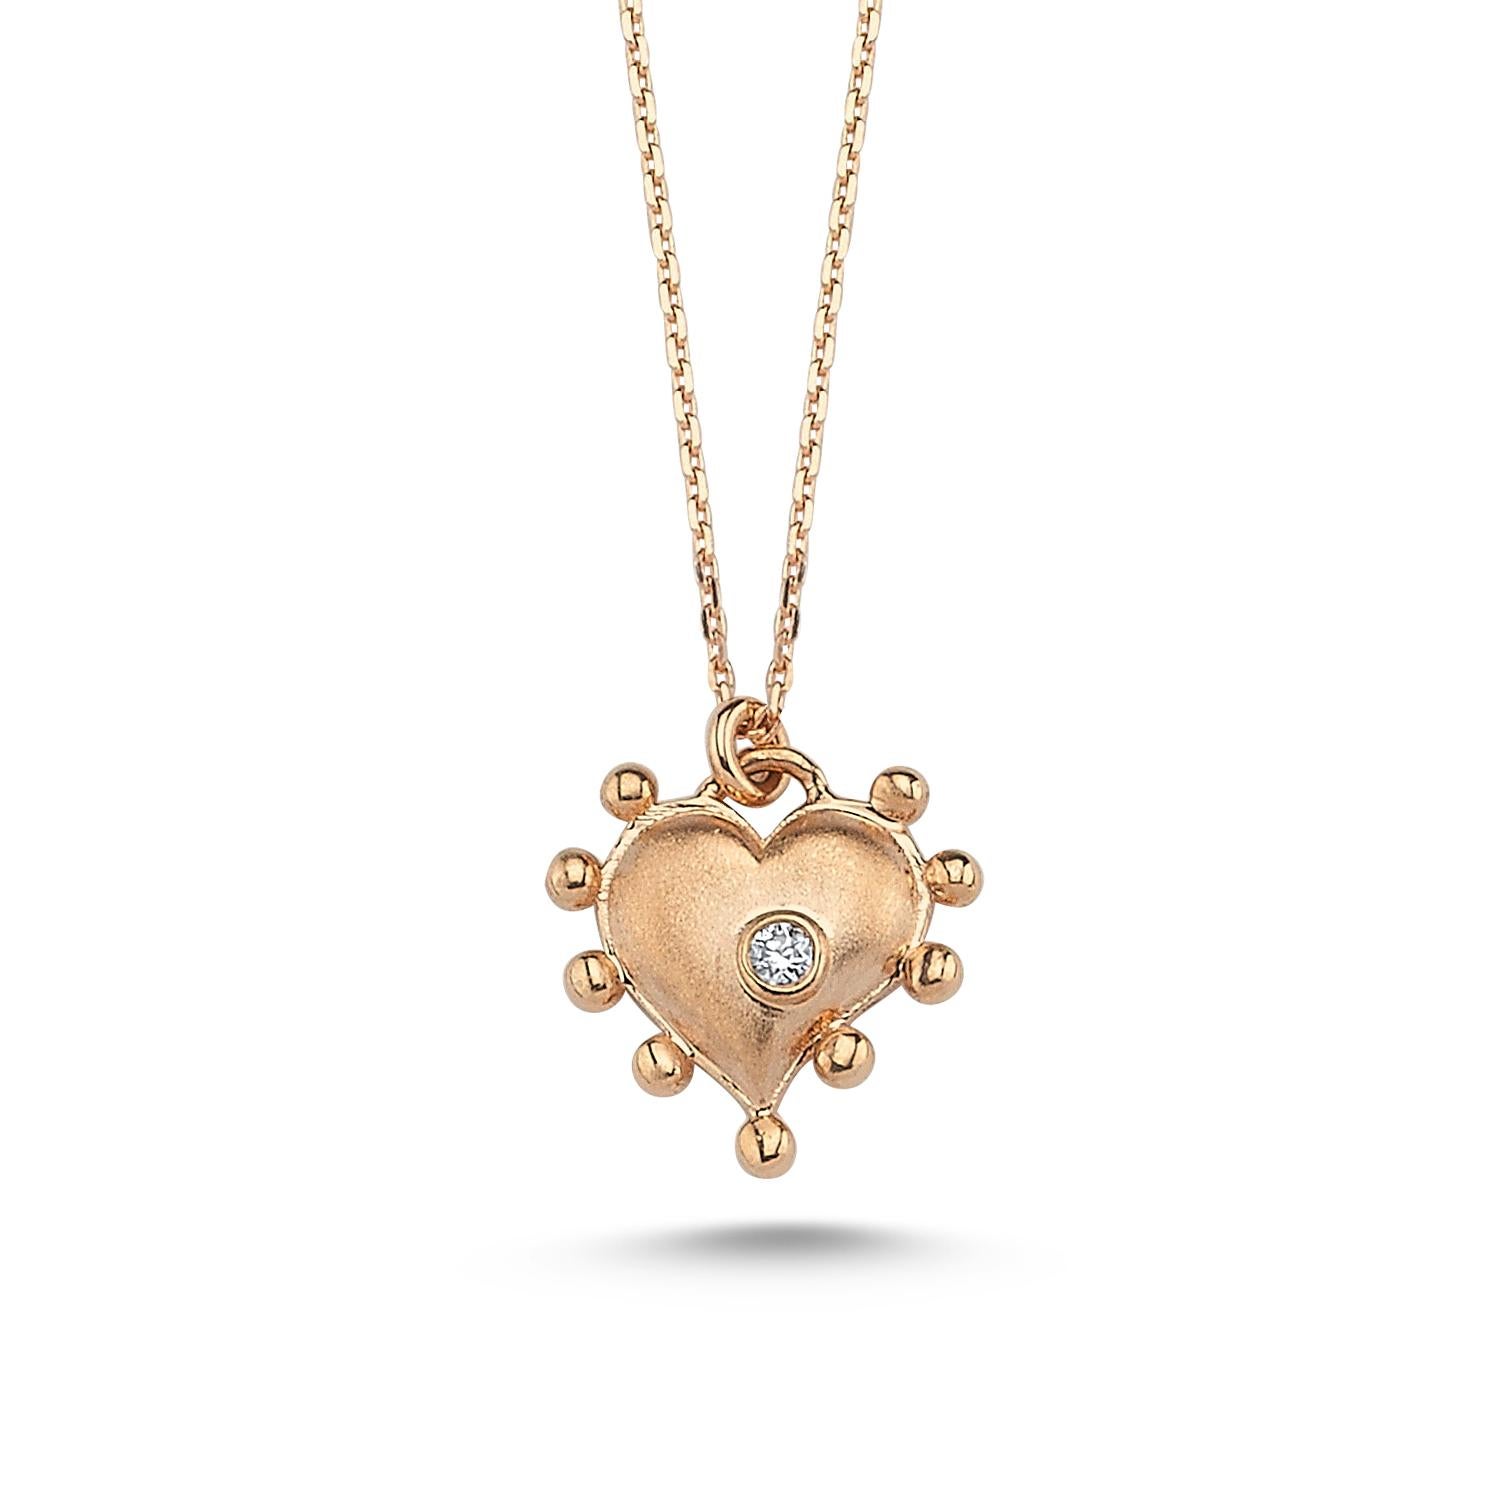 Collier coeur en or rose 14k avec diamant blanc 0,01ct par Selda Jewellery

Informations complémentaires:-
Collection : Collection 